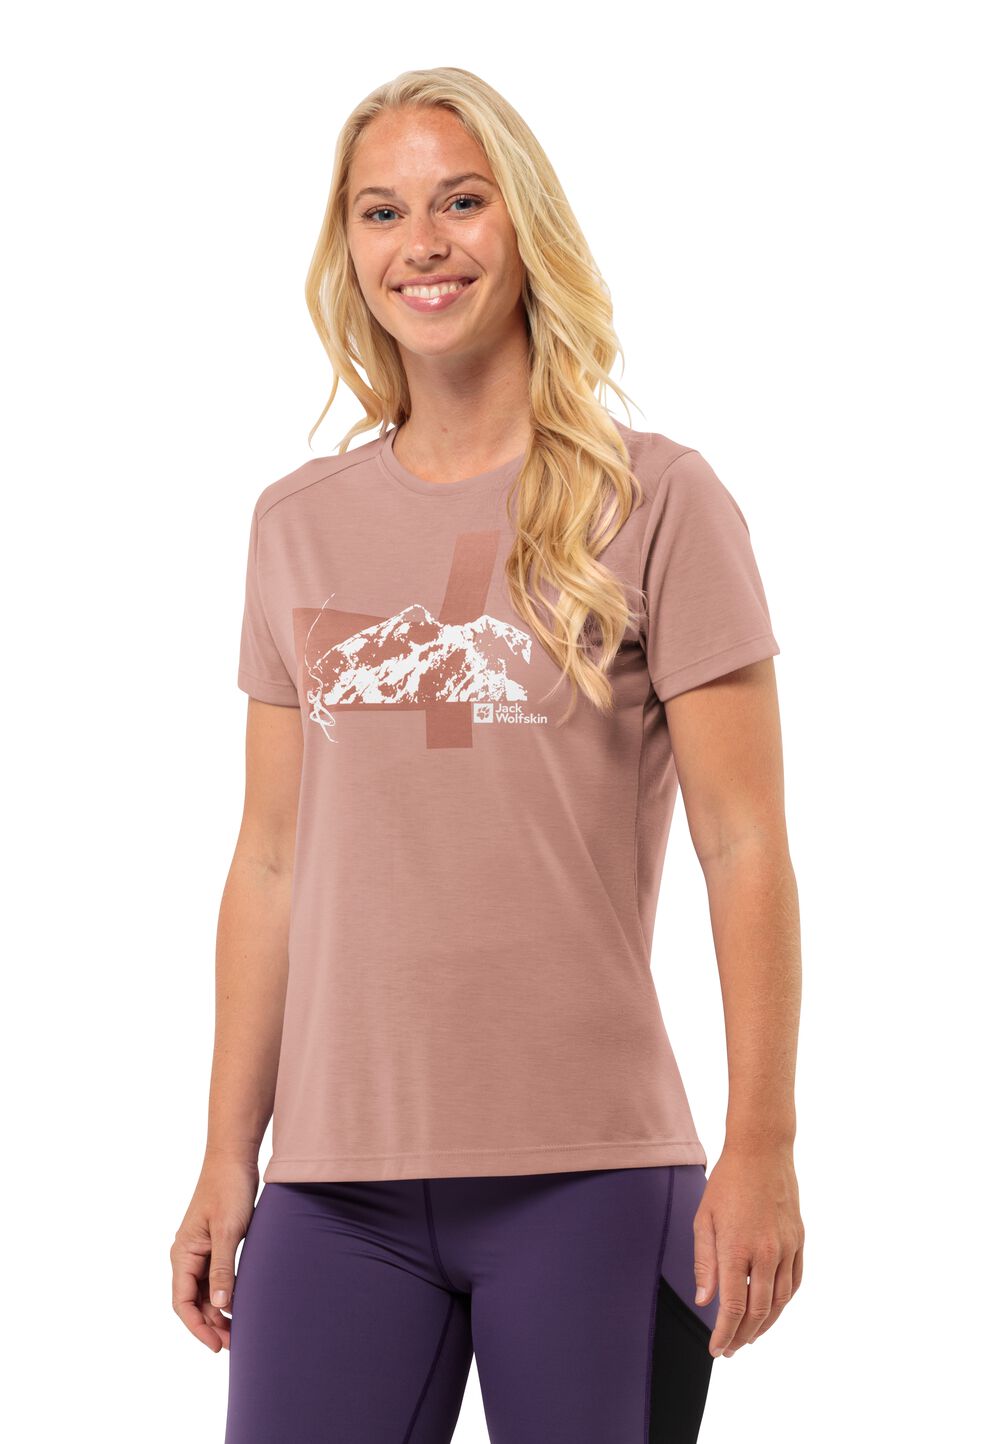 Jack Wolfskin Vonnan S S Graphic T-Shirt Women Functioneel shirt Dames S bruin rose dawn